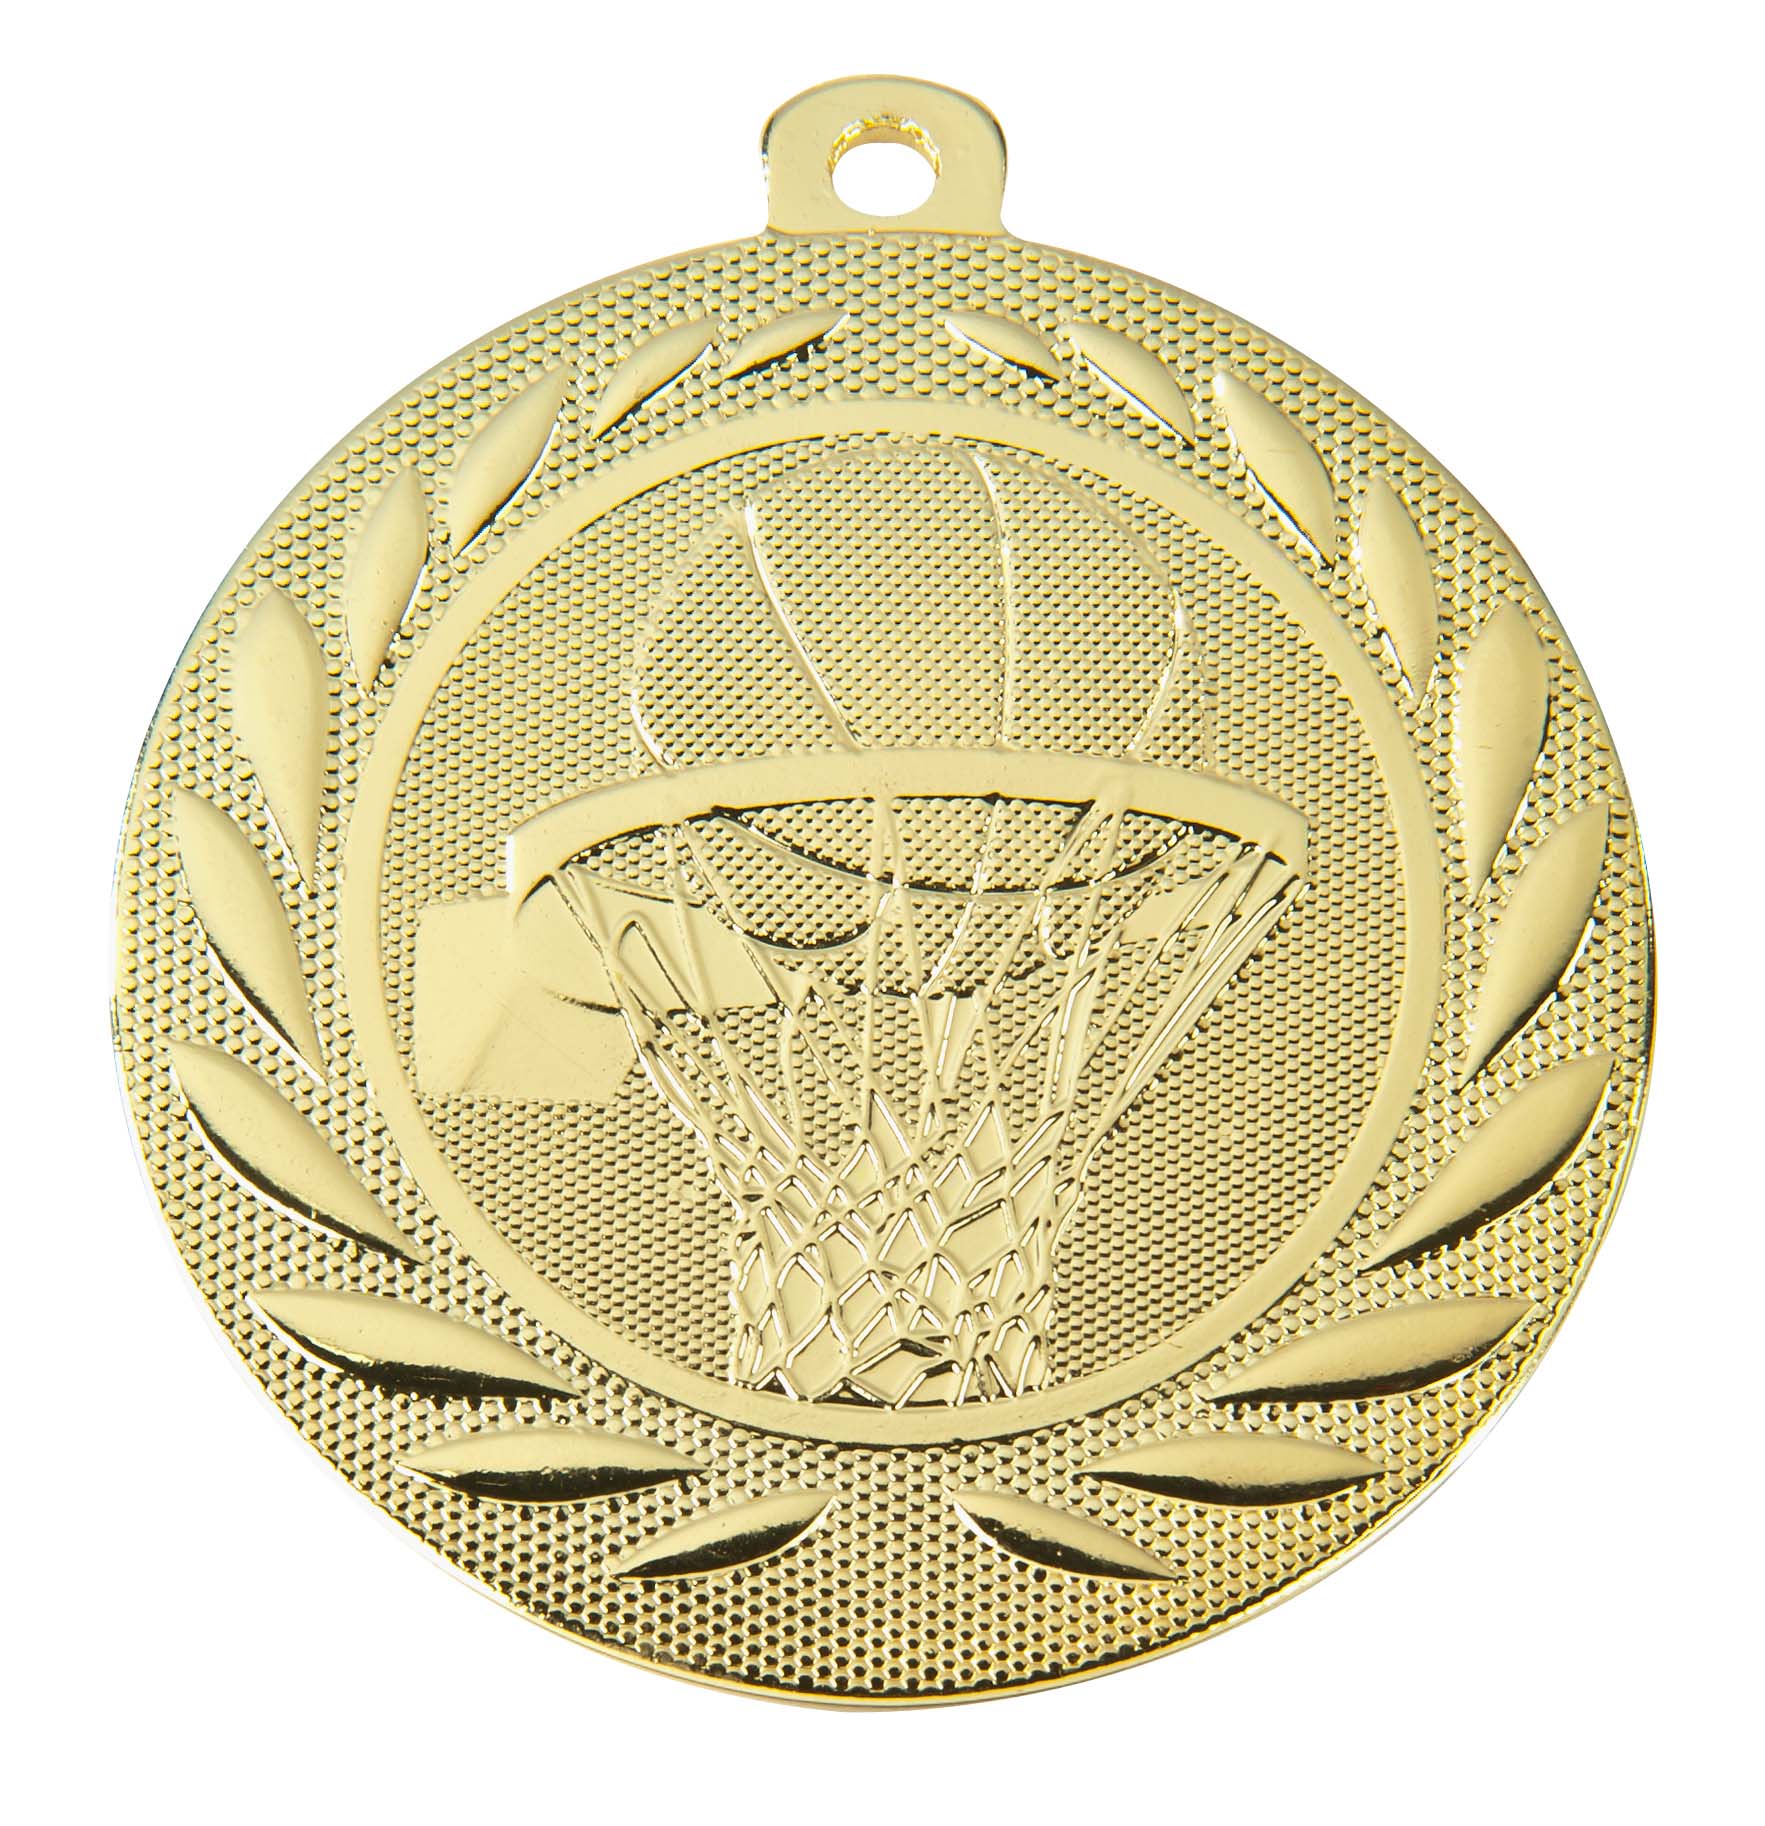 Basketball-Medaille DI5000M inkl. Band und Beschriftung Gold Unmontiert